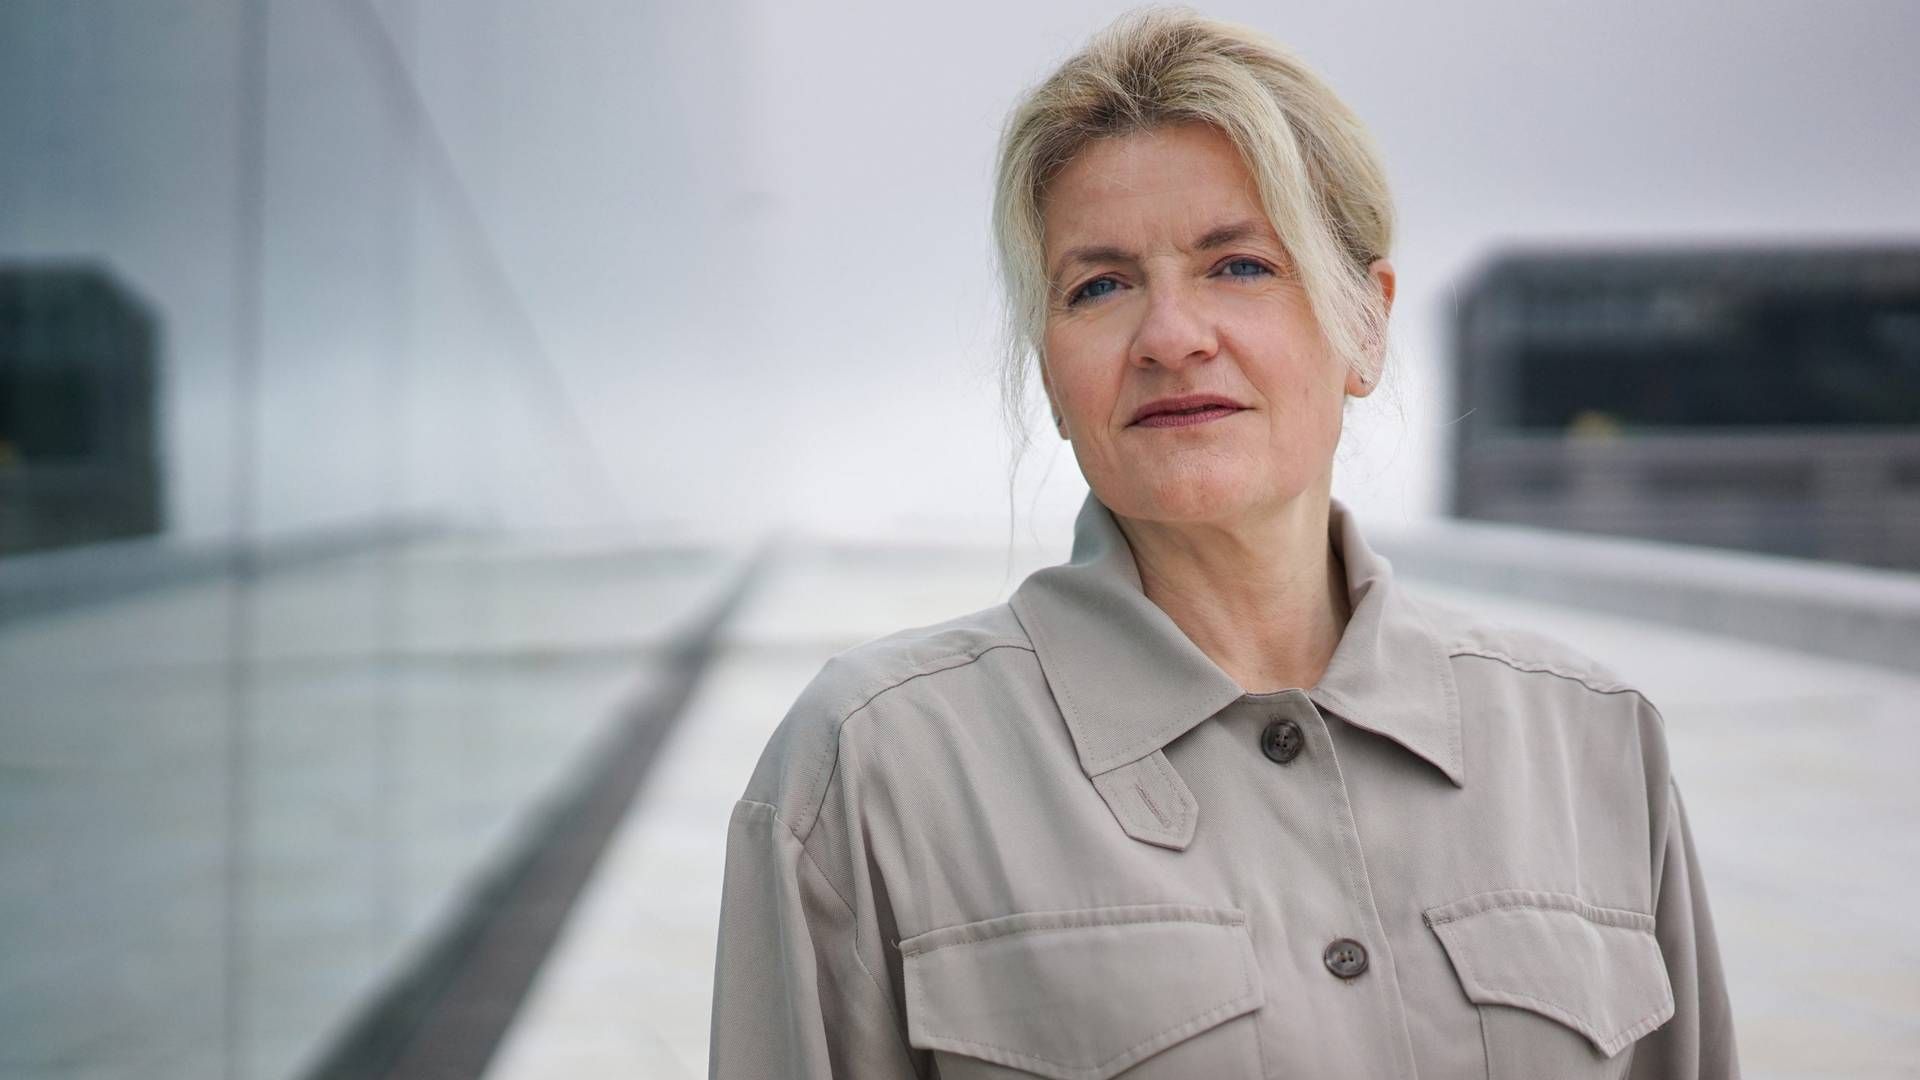 LIVSKRISER: Direktør i Forbrukerrådet, Inger Lise Blyverket, mener mislighold av lån kan skyldes flere årsaker, blant annet ulike livskriser. | Foto: Forbrukerrådet / PR